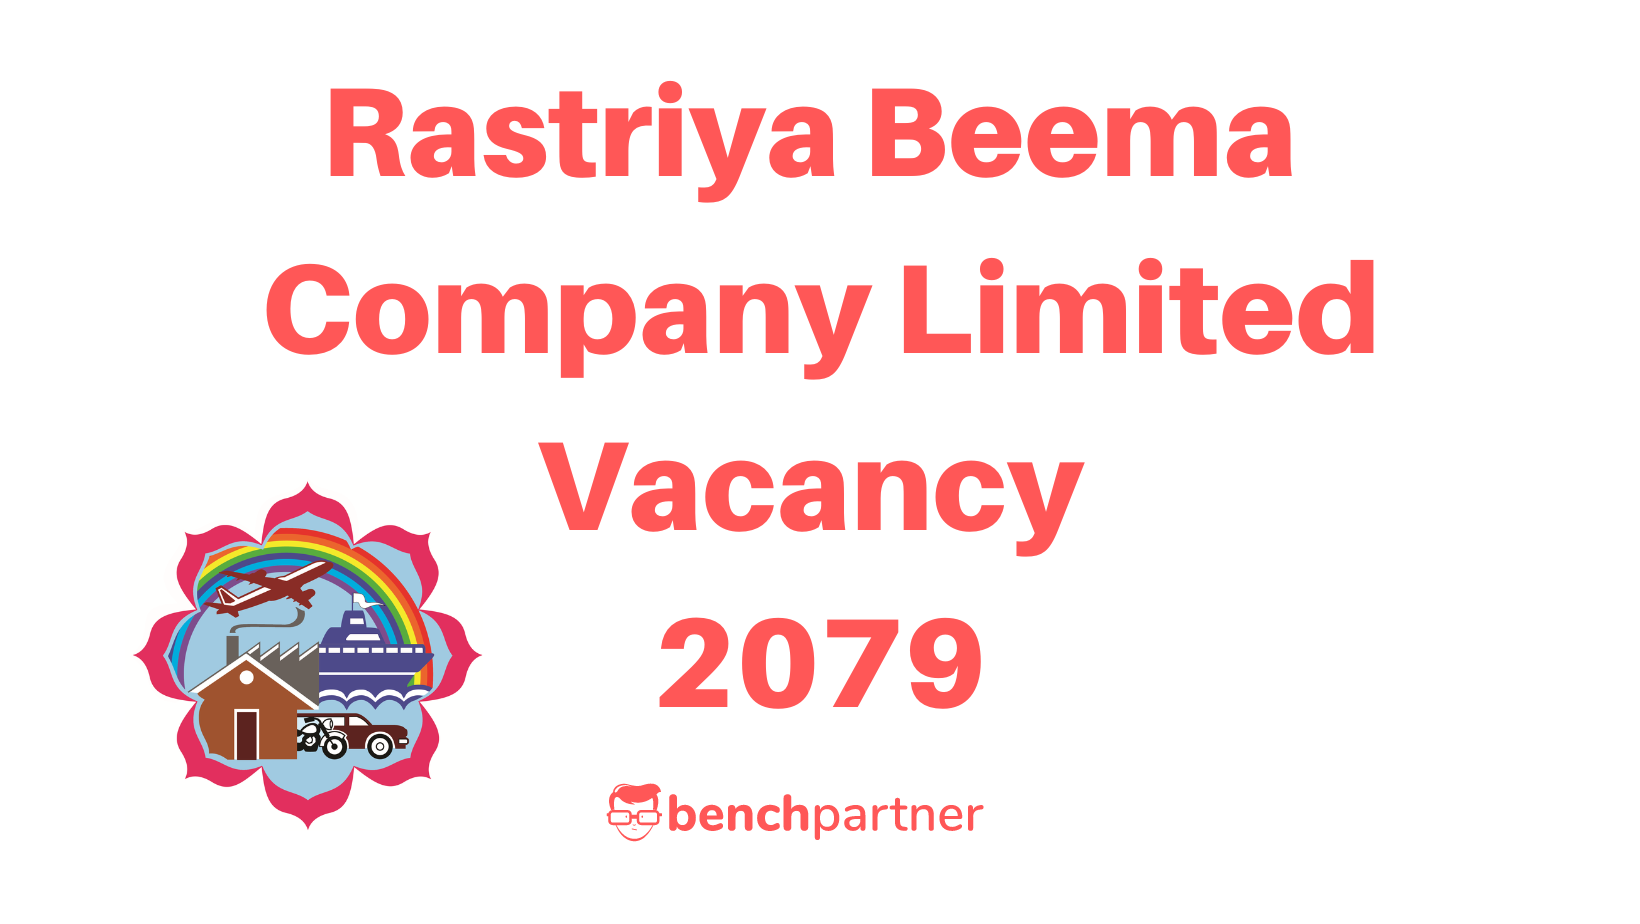 Rastriya Beema Company Limited Vacancy 2079